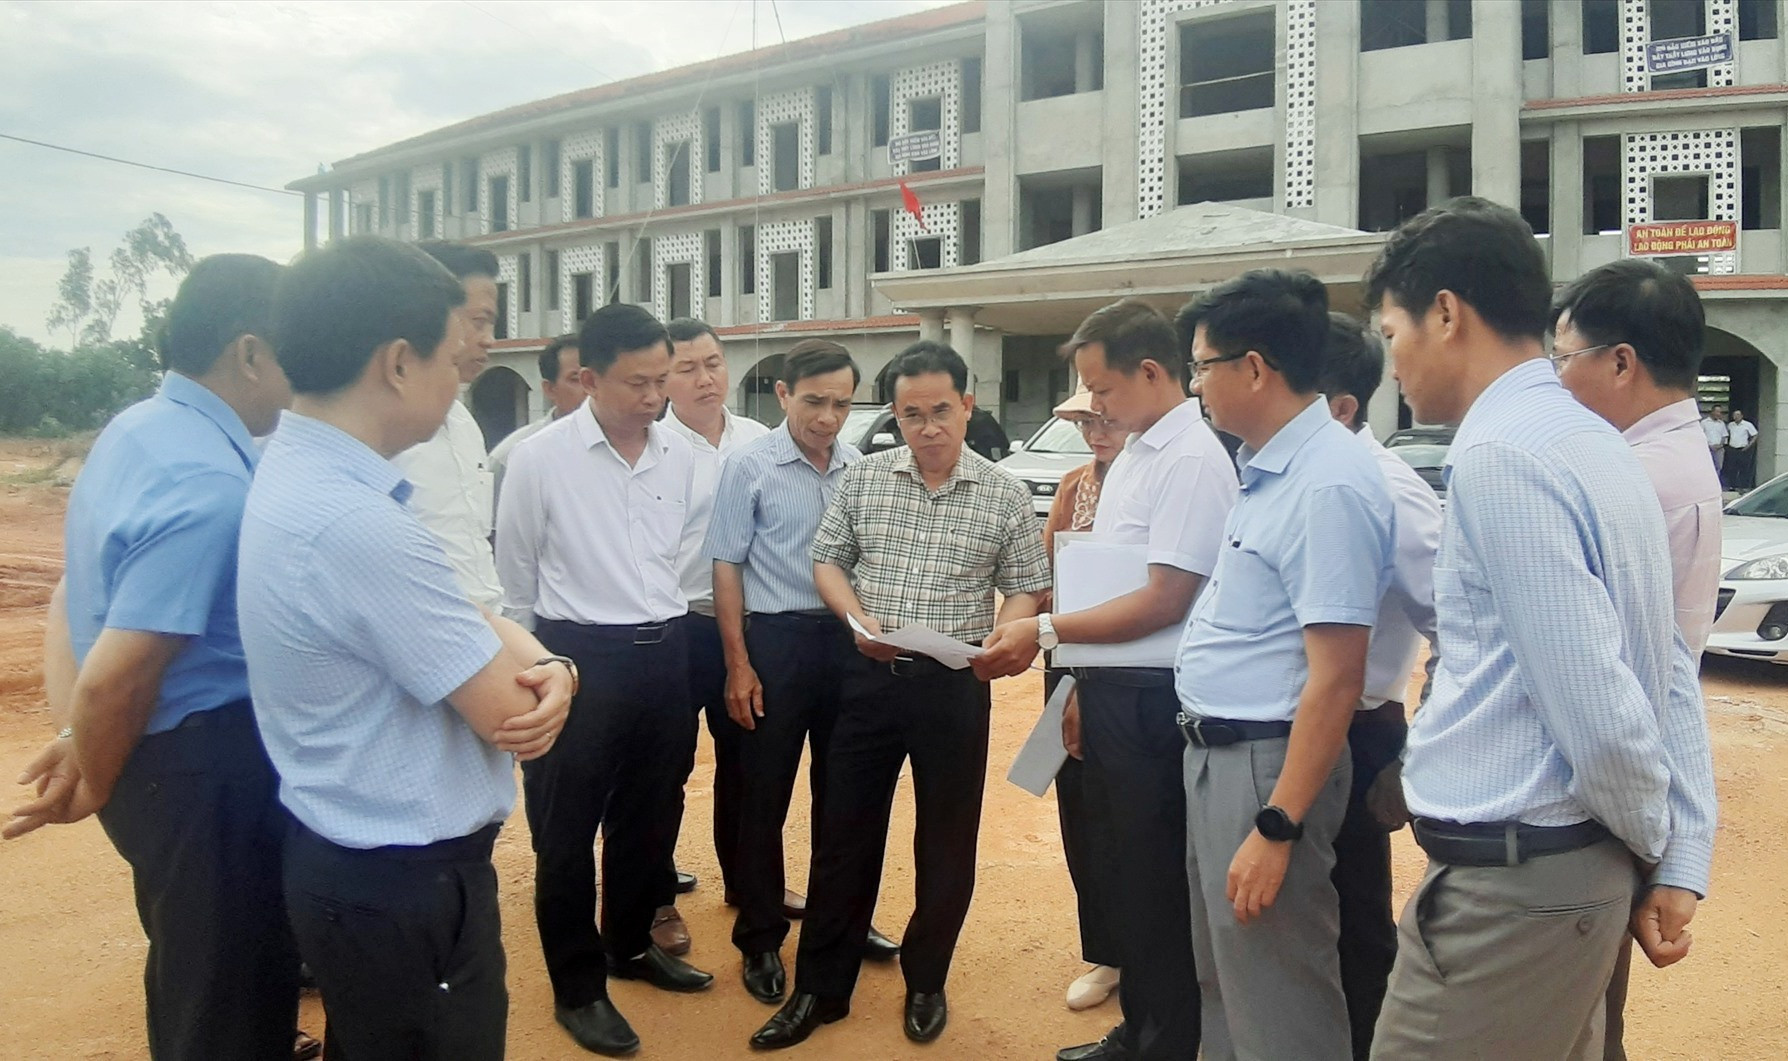 Phó Chủ tịch UBND tỉnh Trần Anh Tuấn cùng đoàn công tác kiểm tra tiến độ xây dựng Trường THPT Trần Đại Nghĩa. Ảnh: N.S